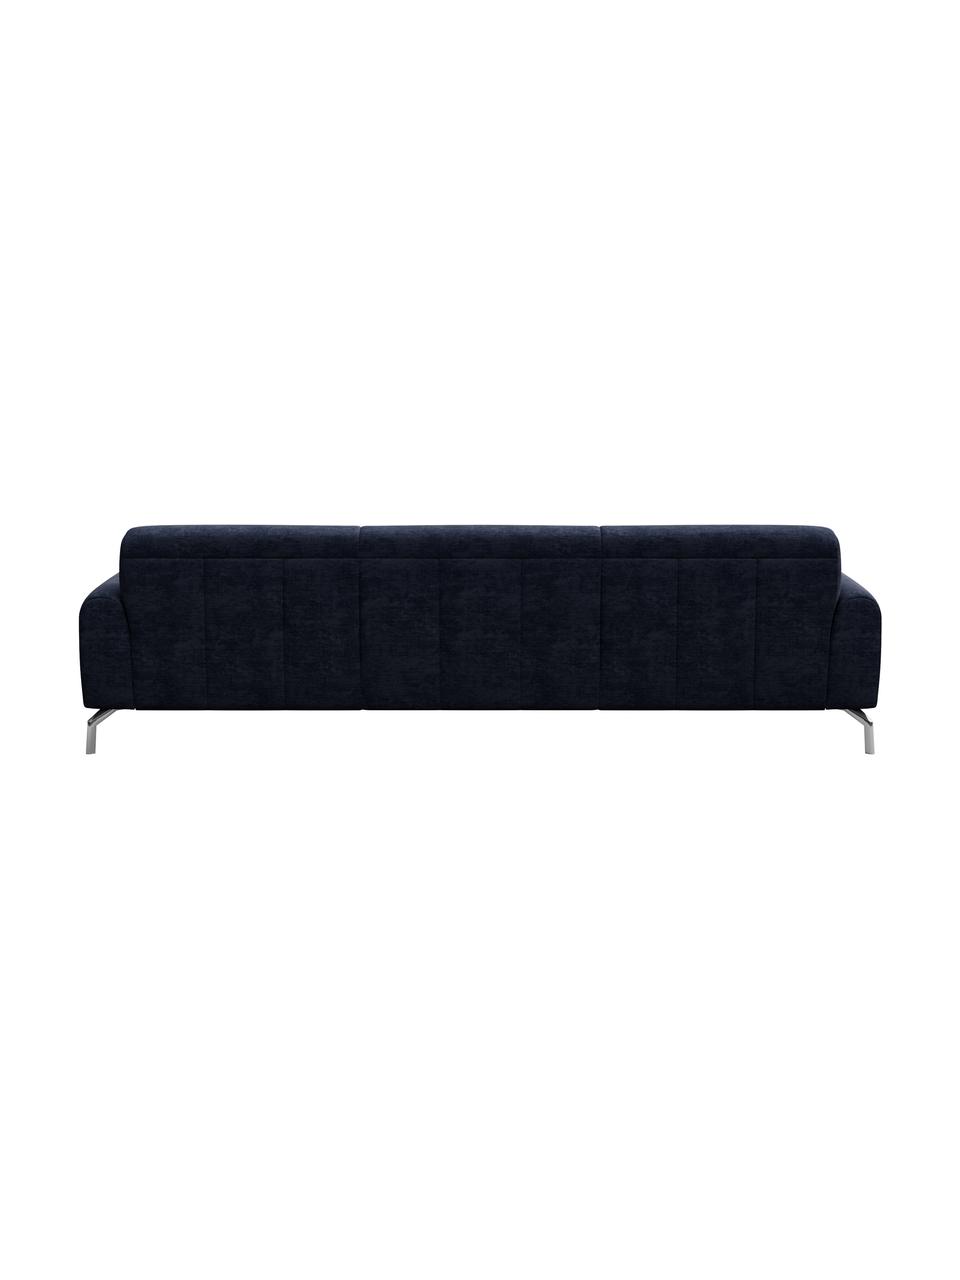 Sofa z systemem Zero-Spot Puzo (3-osobowa), Tapicerka: 100% poliester z Zero Spo, Nogi: metal lakierowany, Niebieski, S 240 x G 84 cm